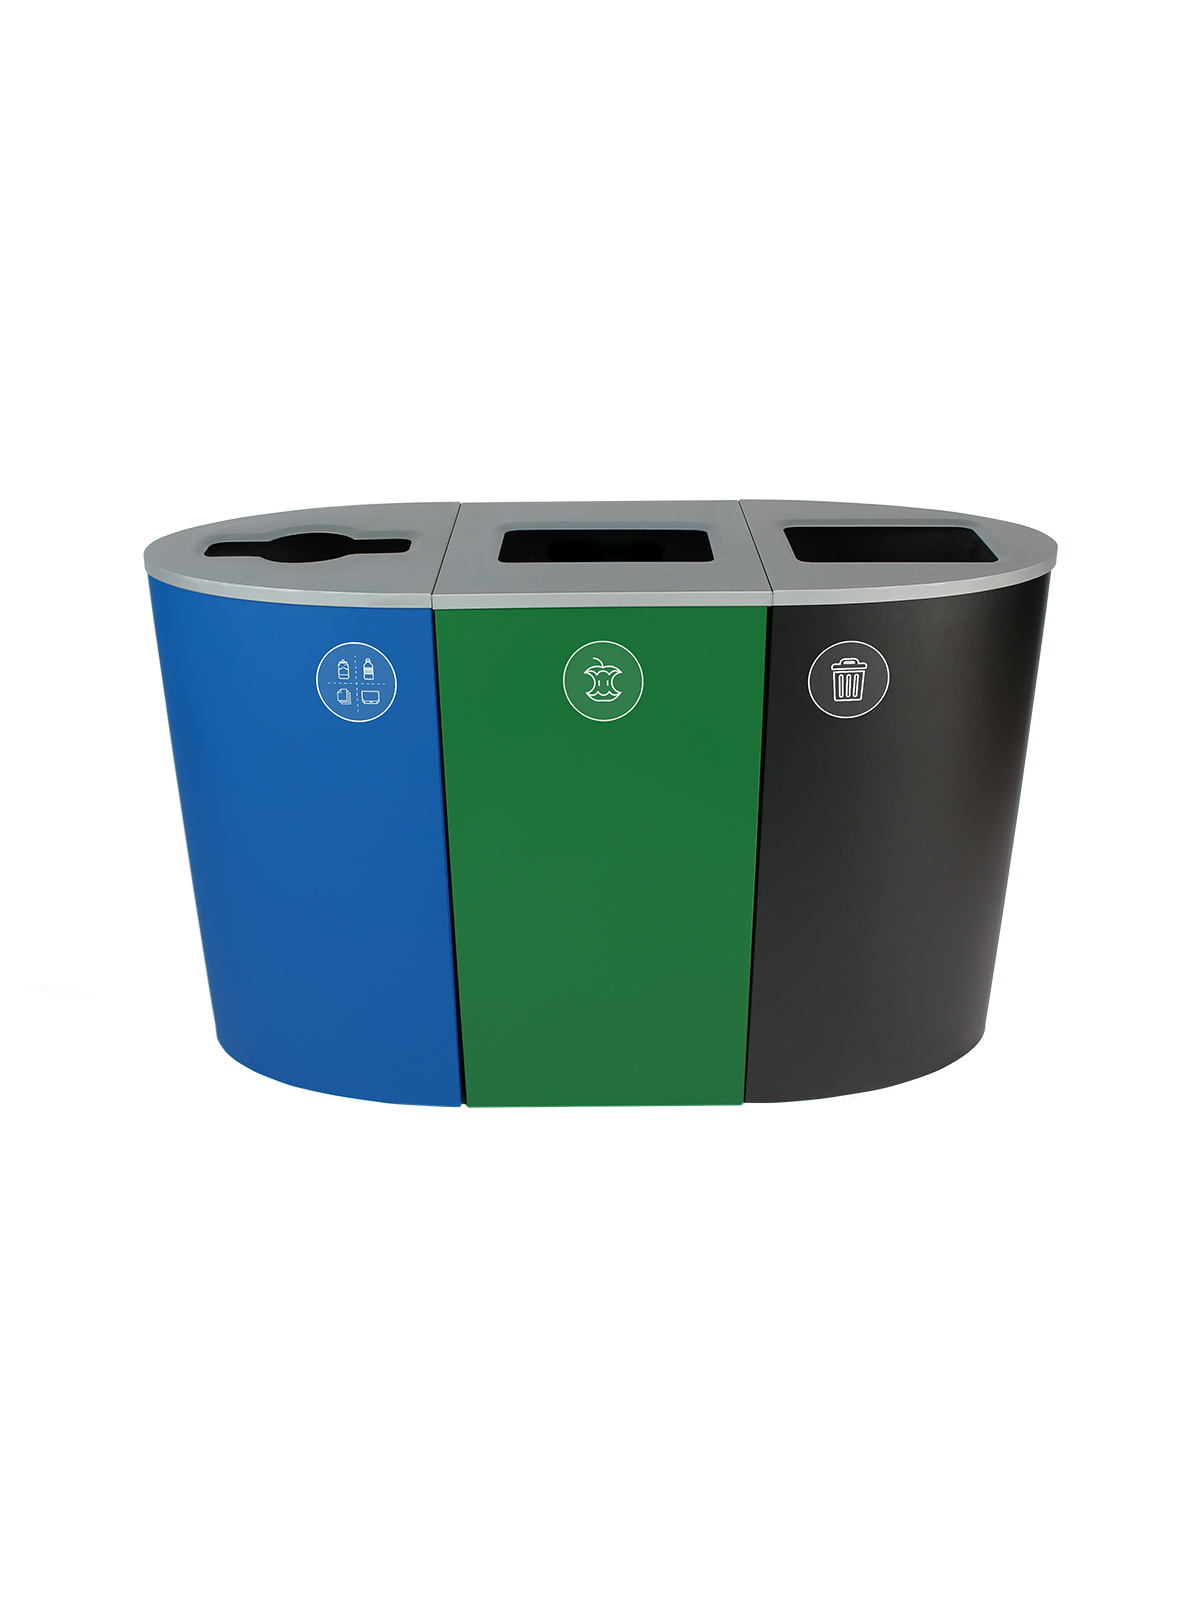 光谱 - 三重 - 威斯康星符合标准 - 混合再循环 - 堆肥 - 垃圾 - 混合全 - 蓝绿色黑色标题=